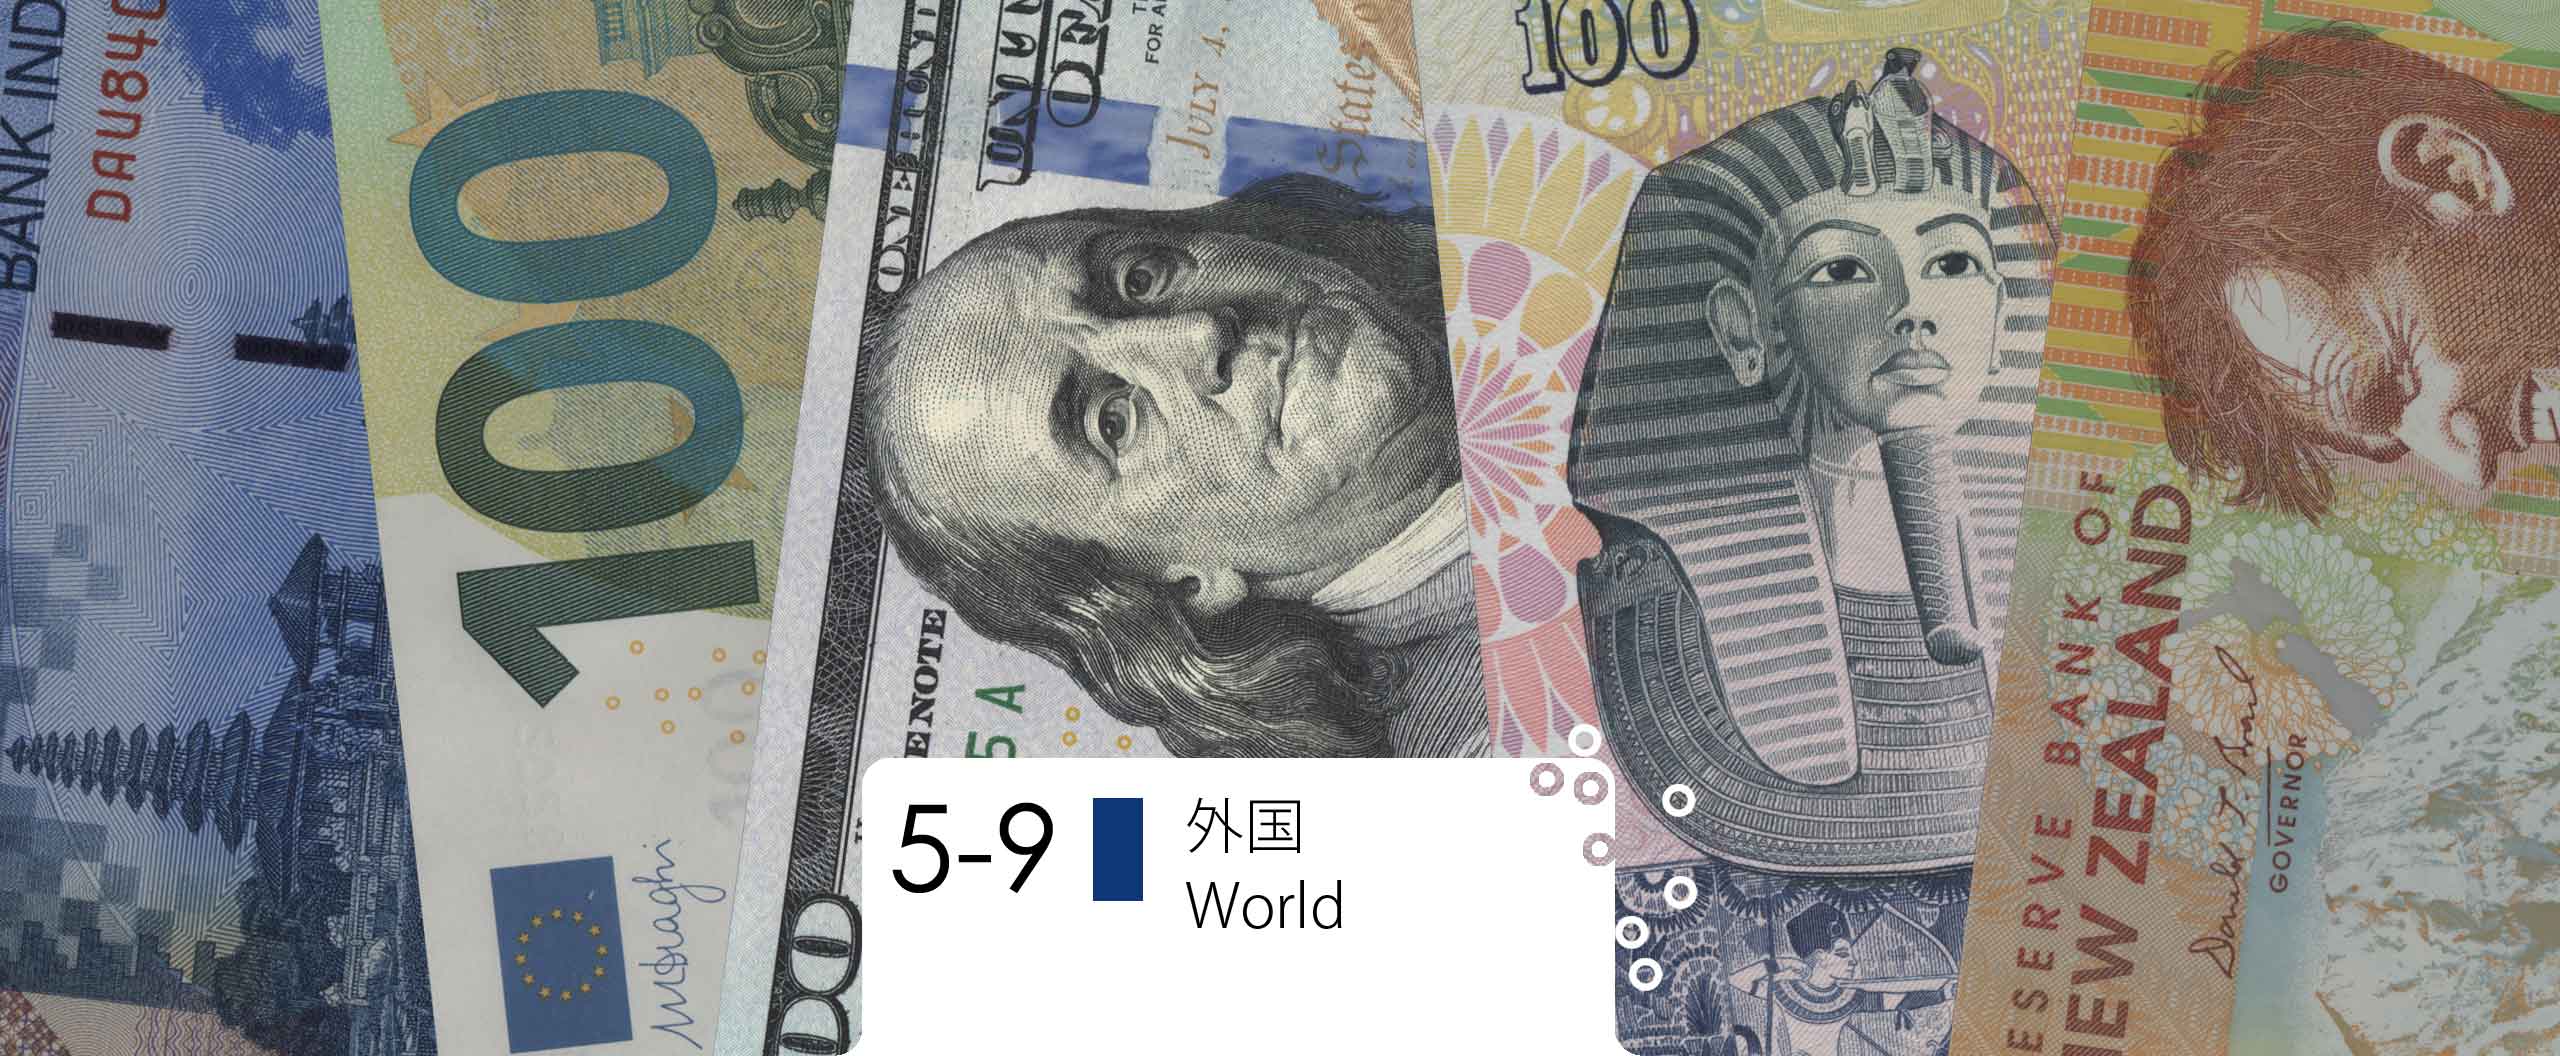 世界各国のお金 / Currencies of all over the world 貨幣博物館